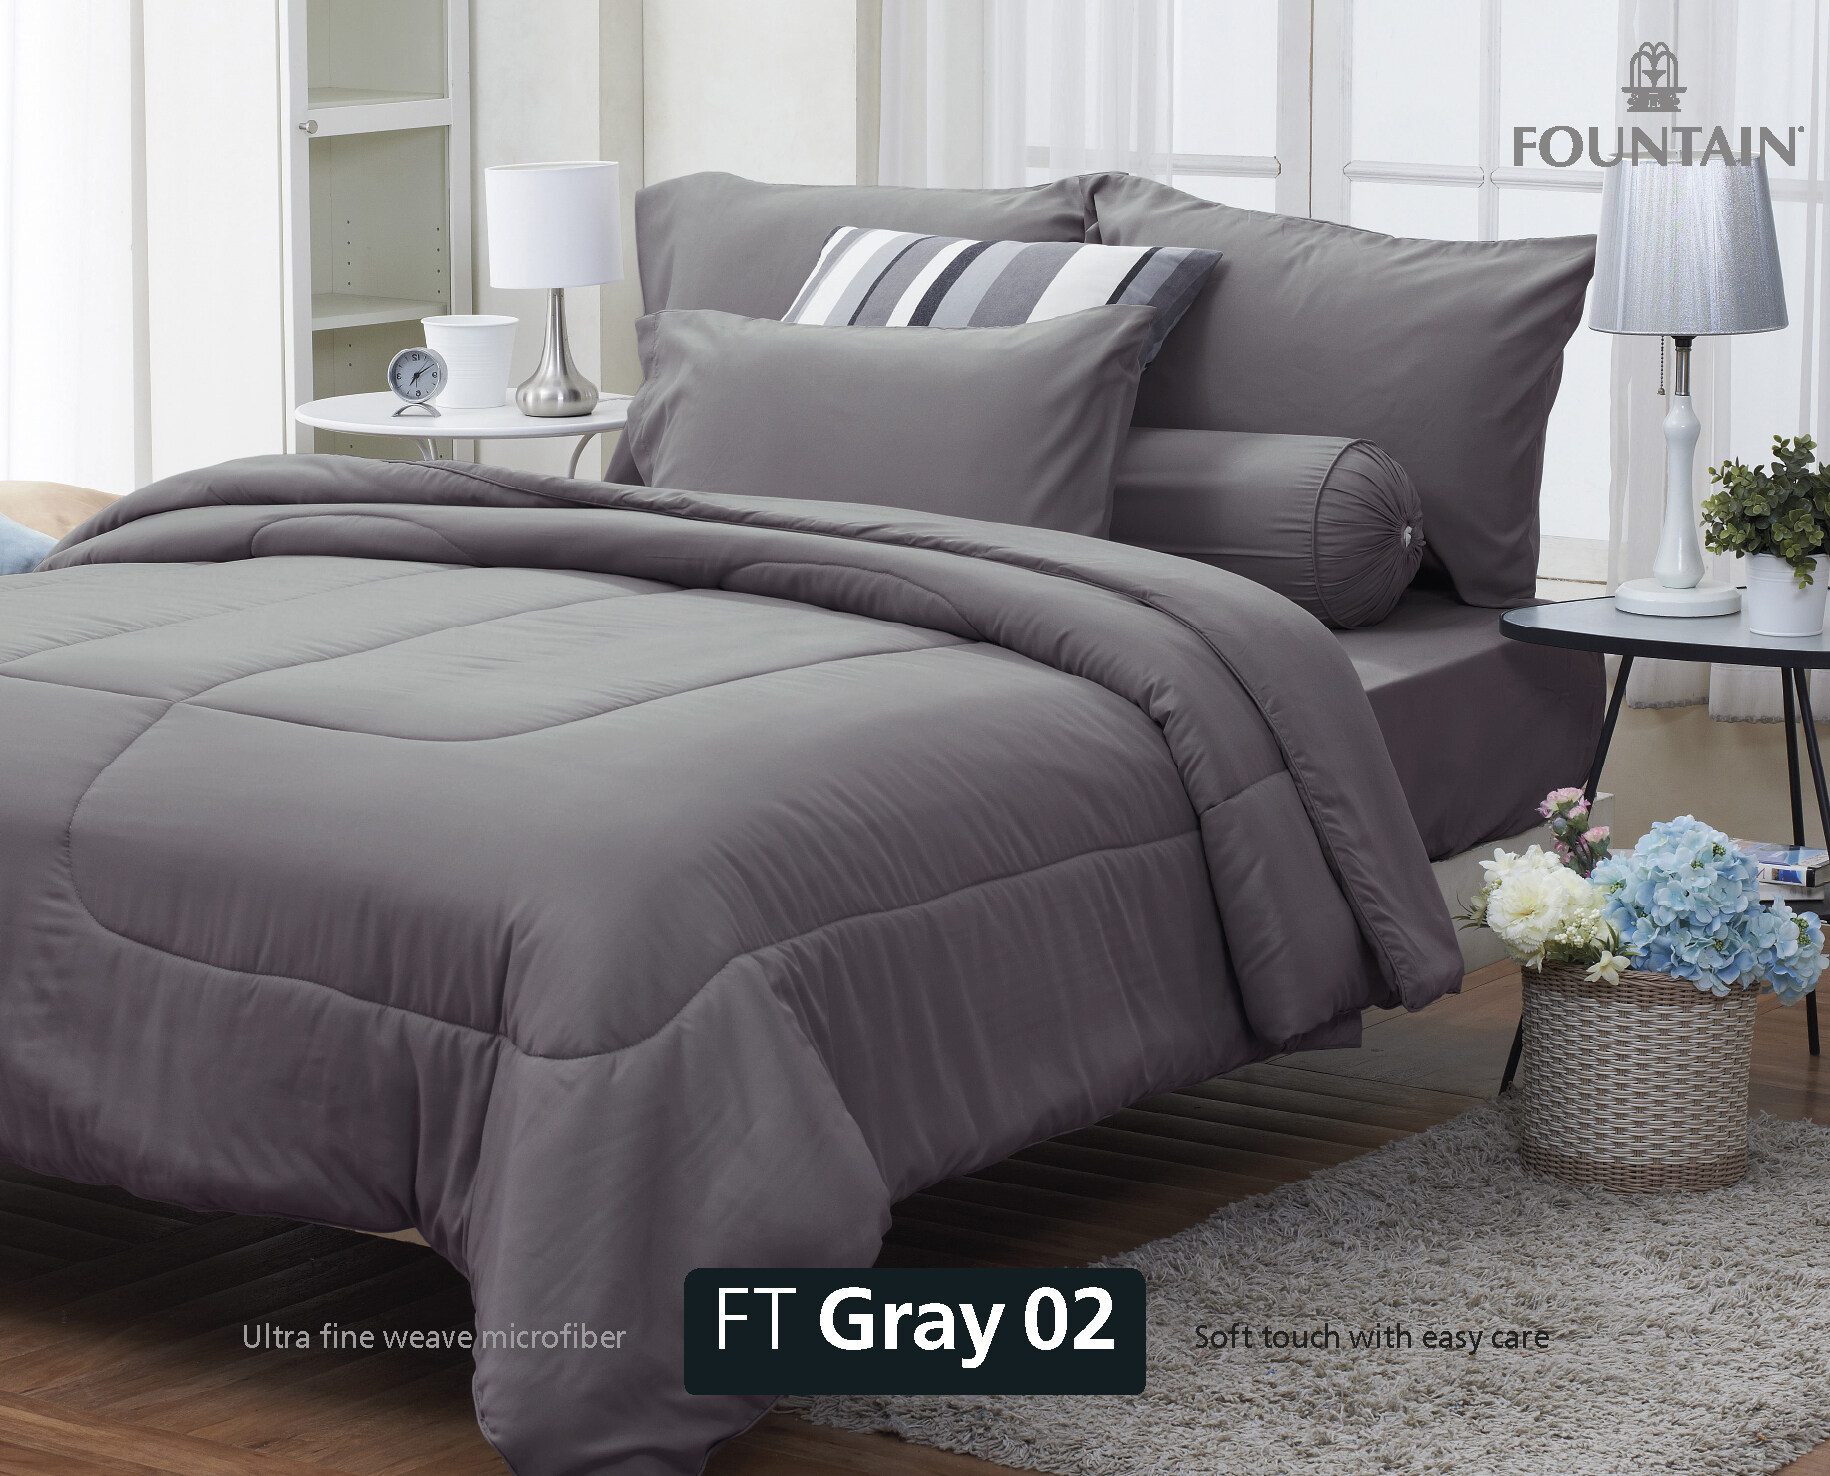 FOUNTAIN ผ้านวม + ชุดผ้าปู ผ้าปู ที่นอน แท้ 100% FTC สีพื้น เขียว Green Gray เทา ขนาด 3.5 5 6ฟุต ชุดเครื่องนอน ผ้านวม ผ้าปูที่นอน wonderful bedding  สี → Gray2ขนาดสินค้า 3.5 ฟุต